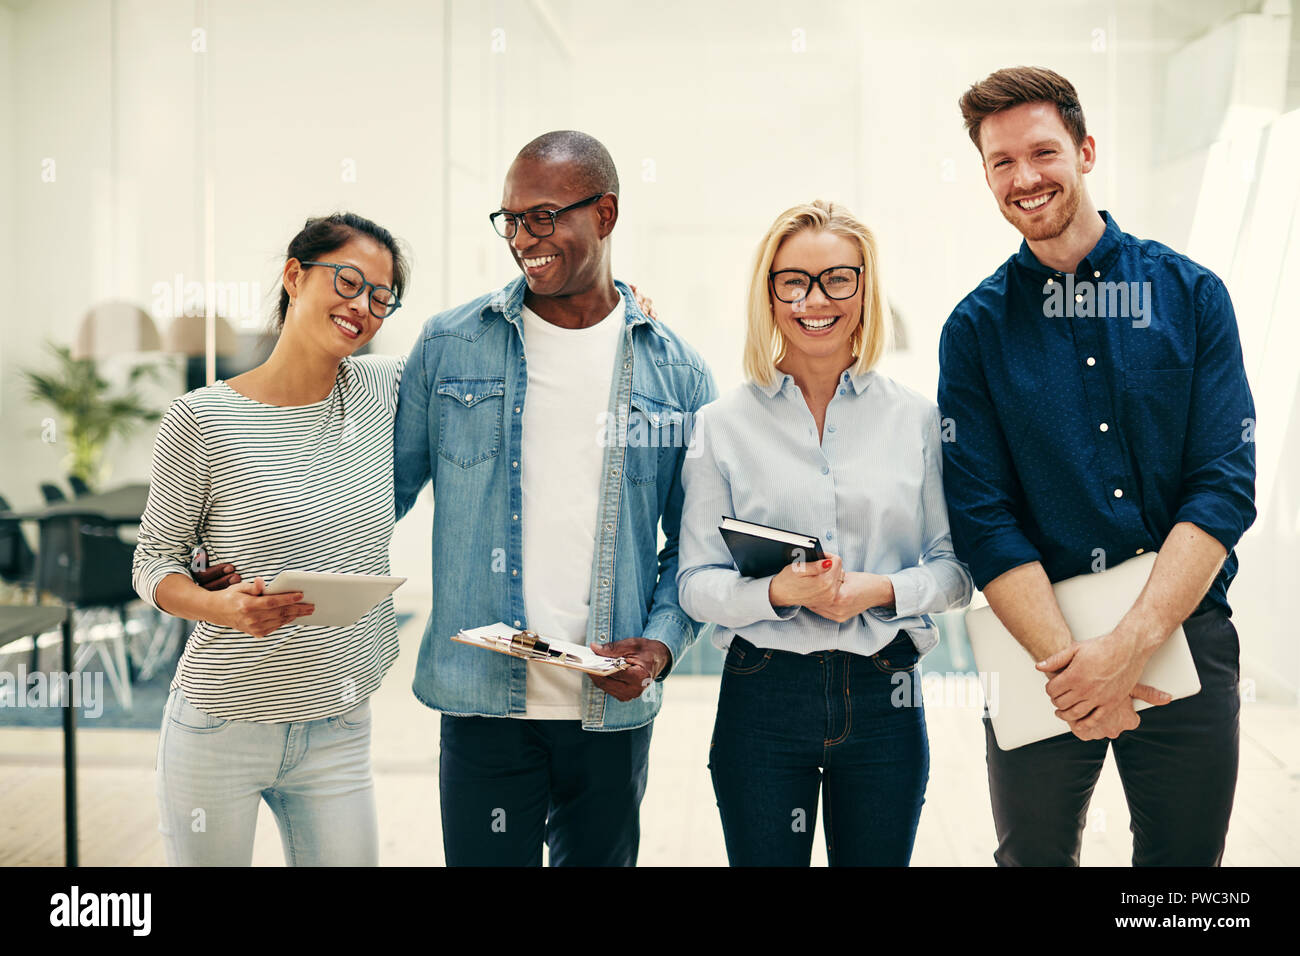 Laughing grupo diverso de jóvenes empresarios que trabajan codo con codo junto en una luminosa oficina moderna Foto de stock